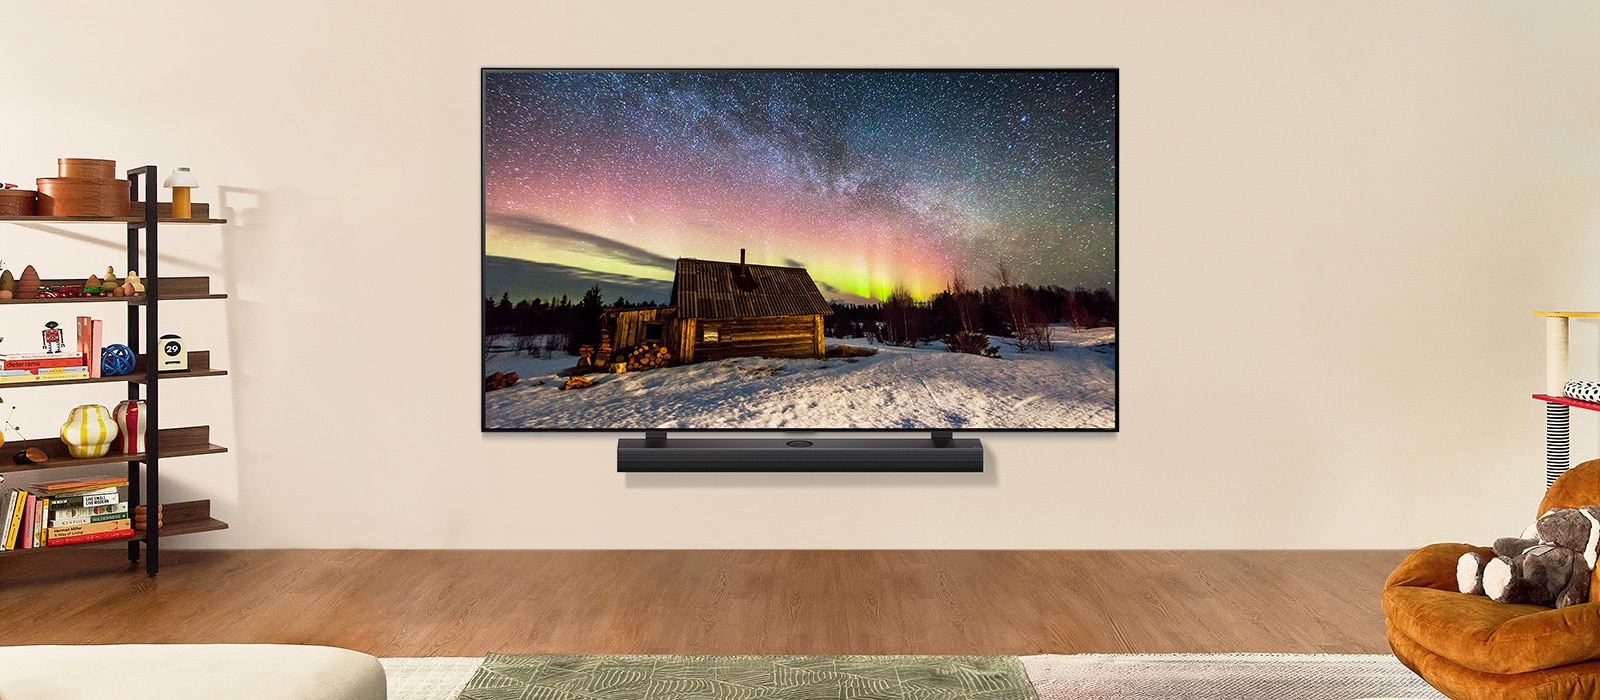 LG TV y LG Soundbar en un espacio moderno durante la noche. La imagen en pantalla de la aurora boreal se muestra con los niveles de brillo ideales.